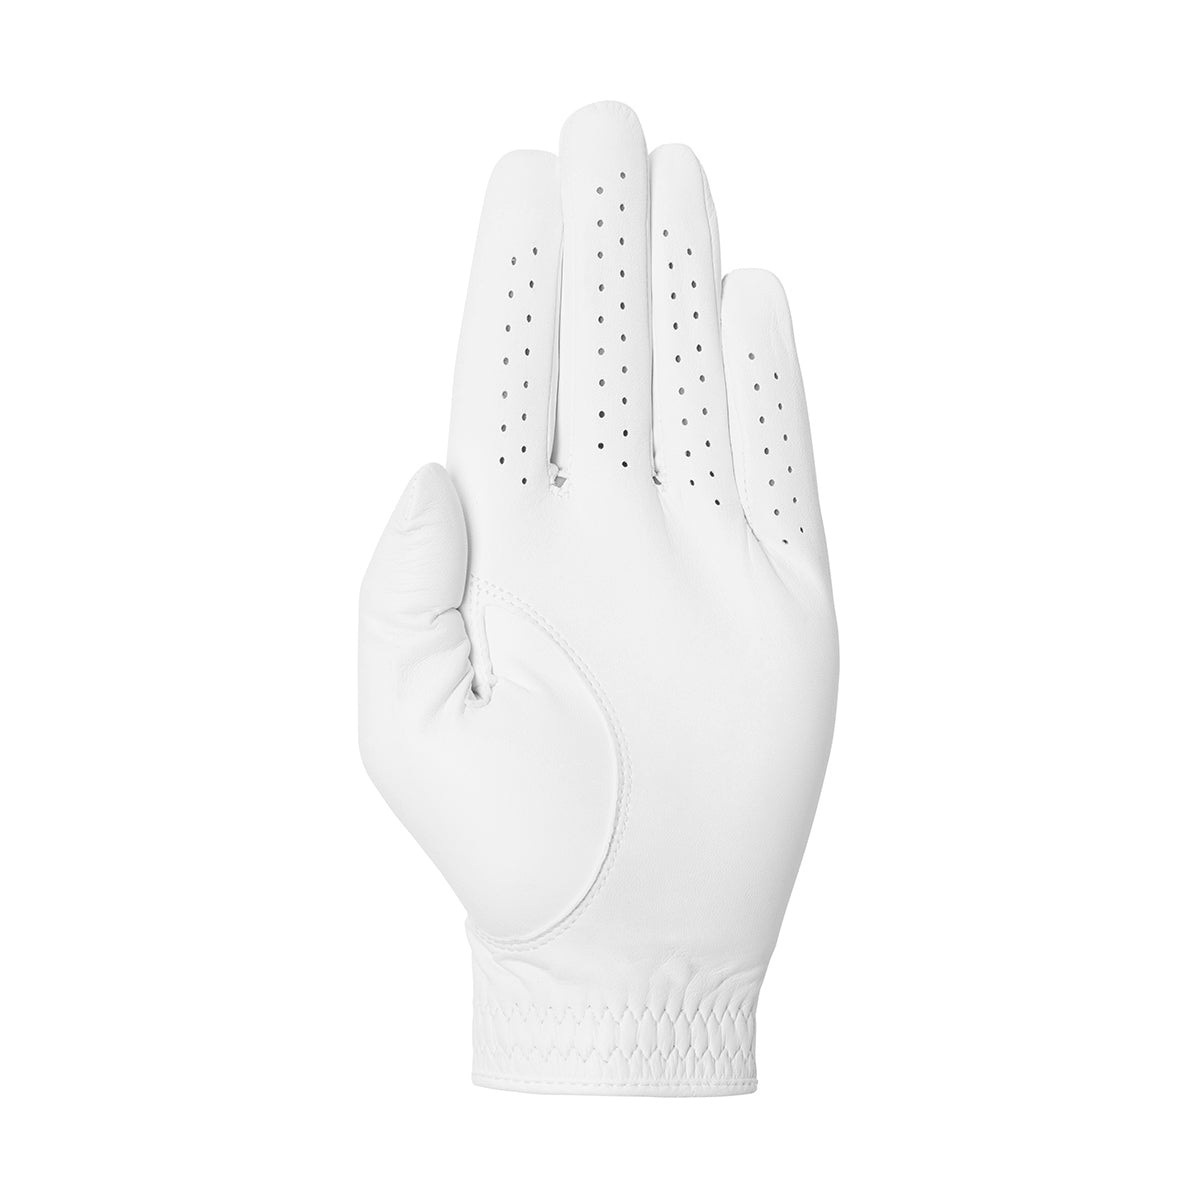 Men's Elite Pro Fontana White Golf Glove - Left